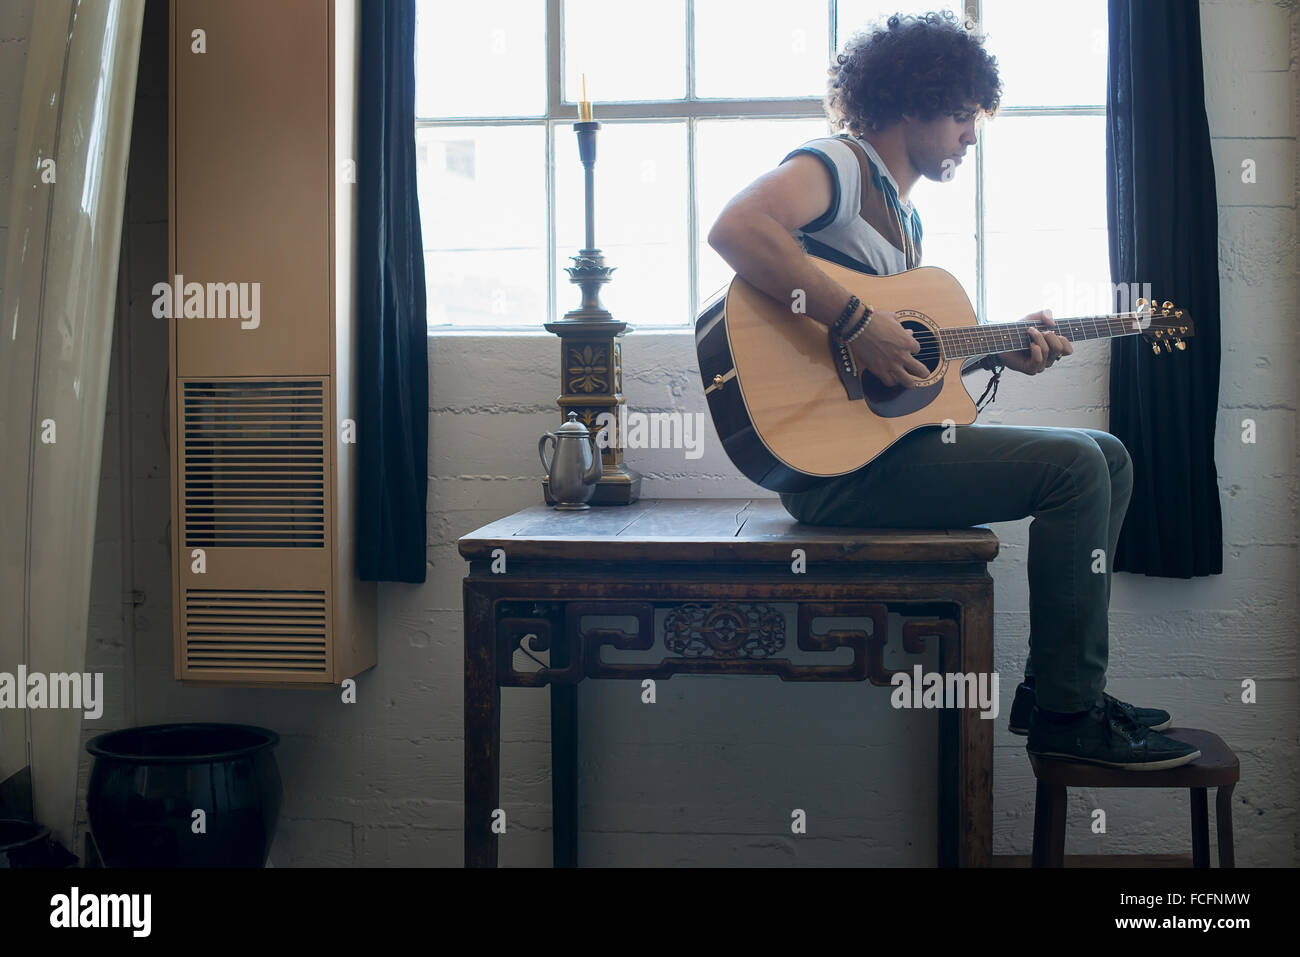 Loft-lebendigen. Ein junger Mann Gitarre spielen. Stockfoto